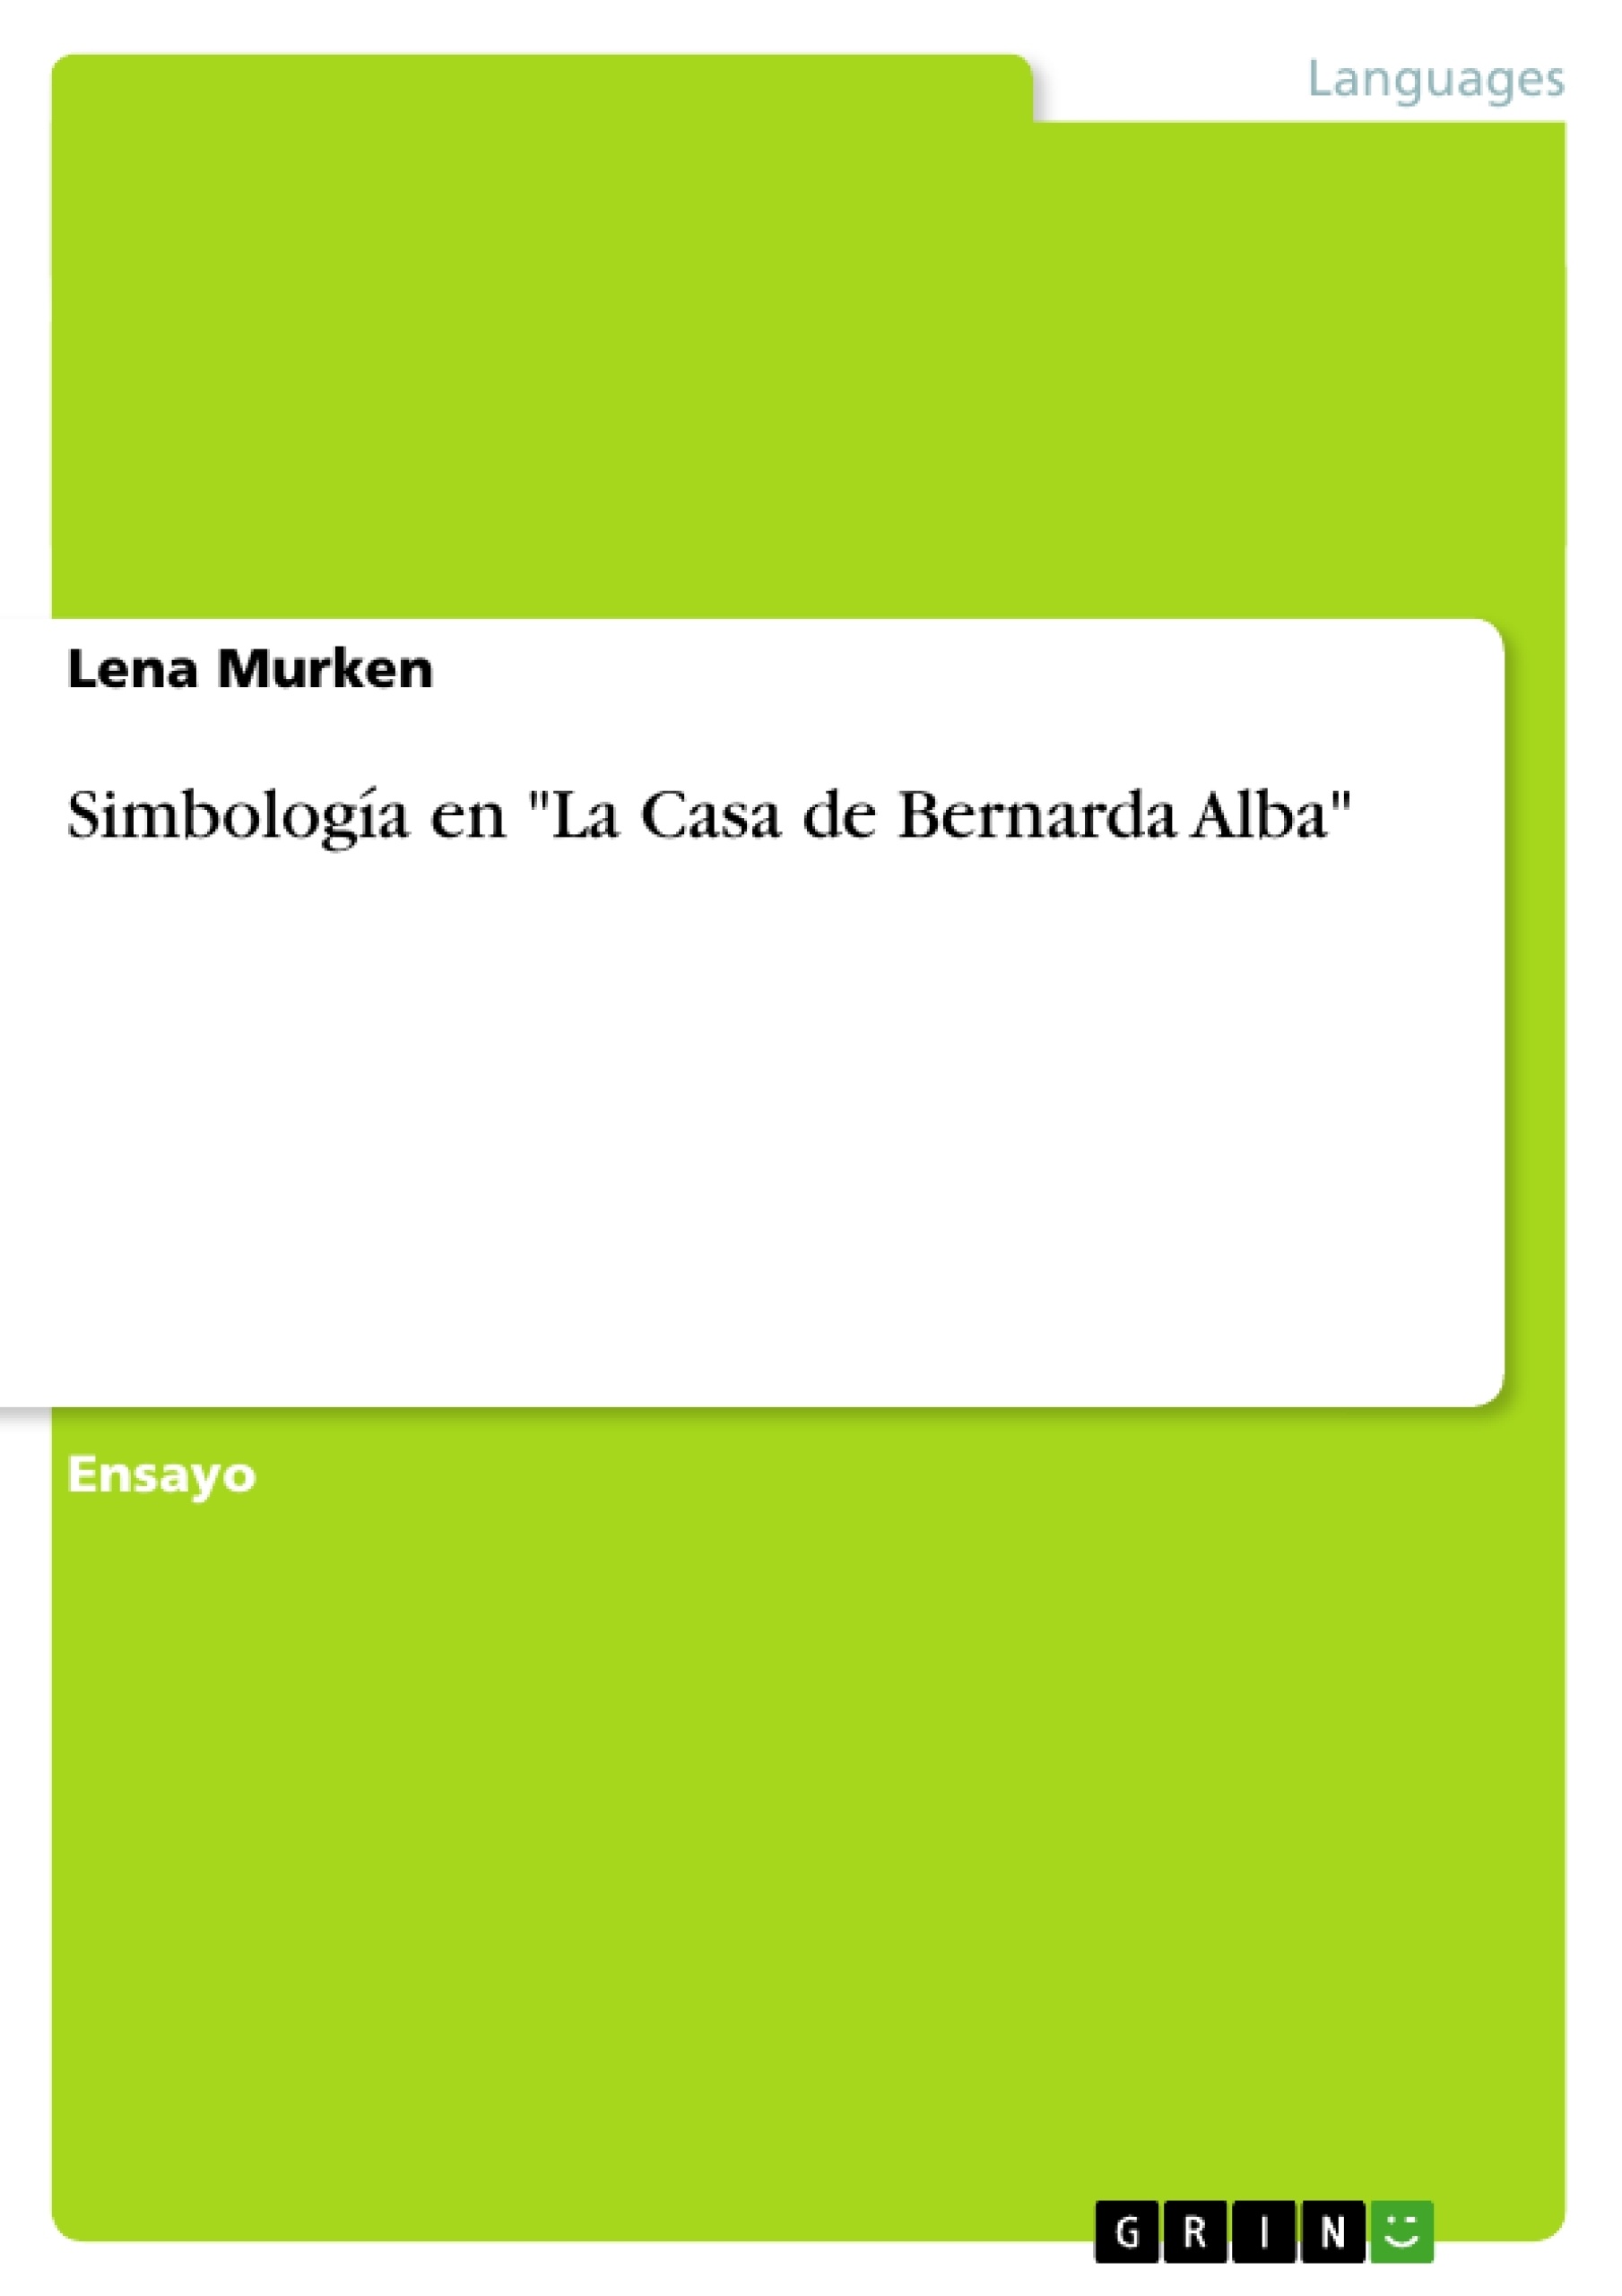 Título: Simbología en "La Casa de Bernarda Alba"